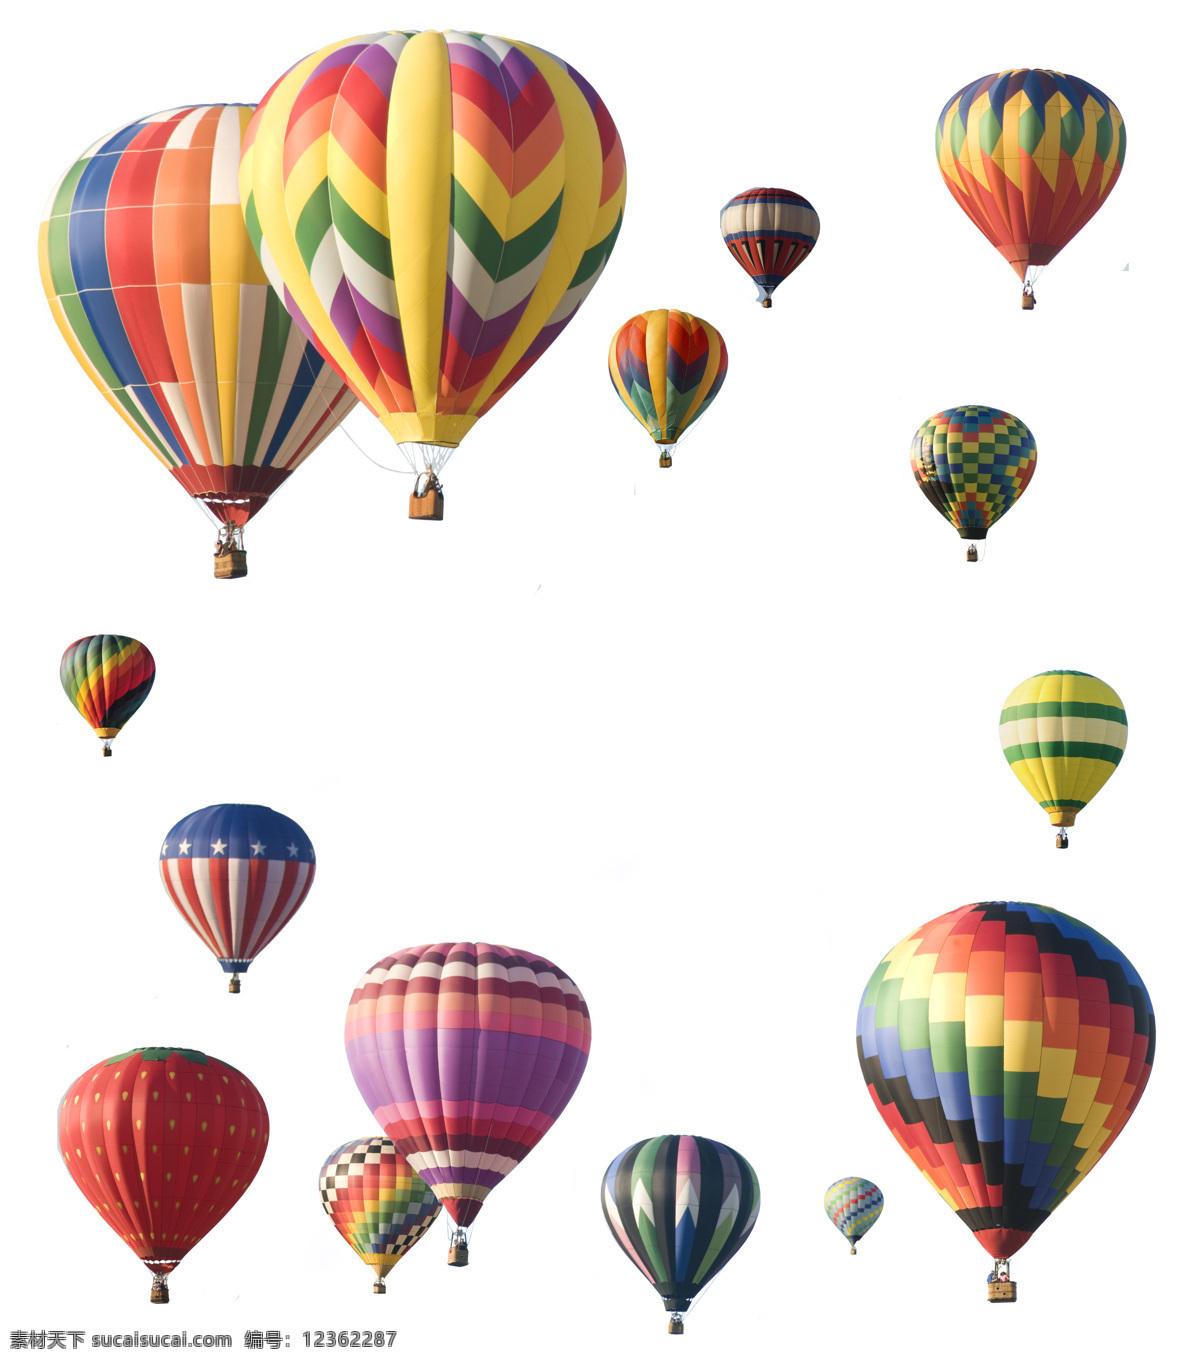 热气球素材 彩色热气球 卡通热气球 卡通氢气球 热气球模板 图标素材 交通工具 现代科技